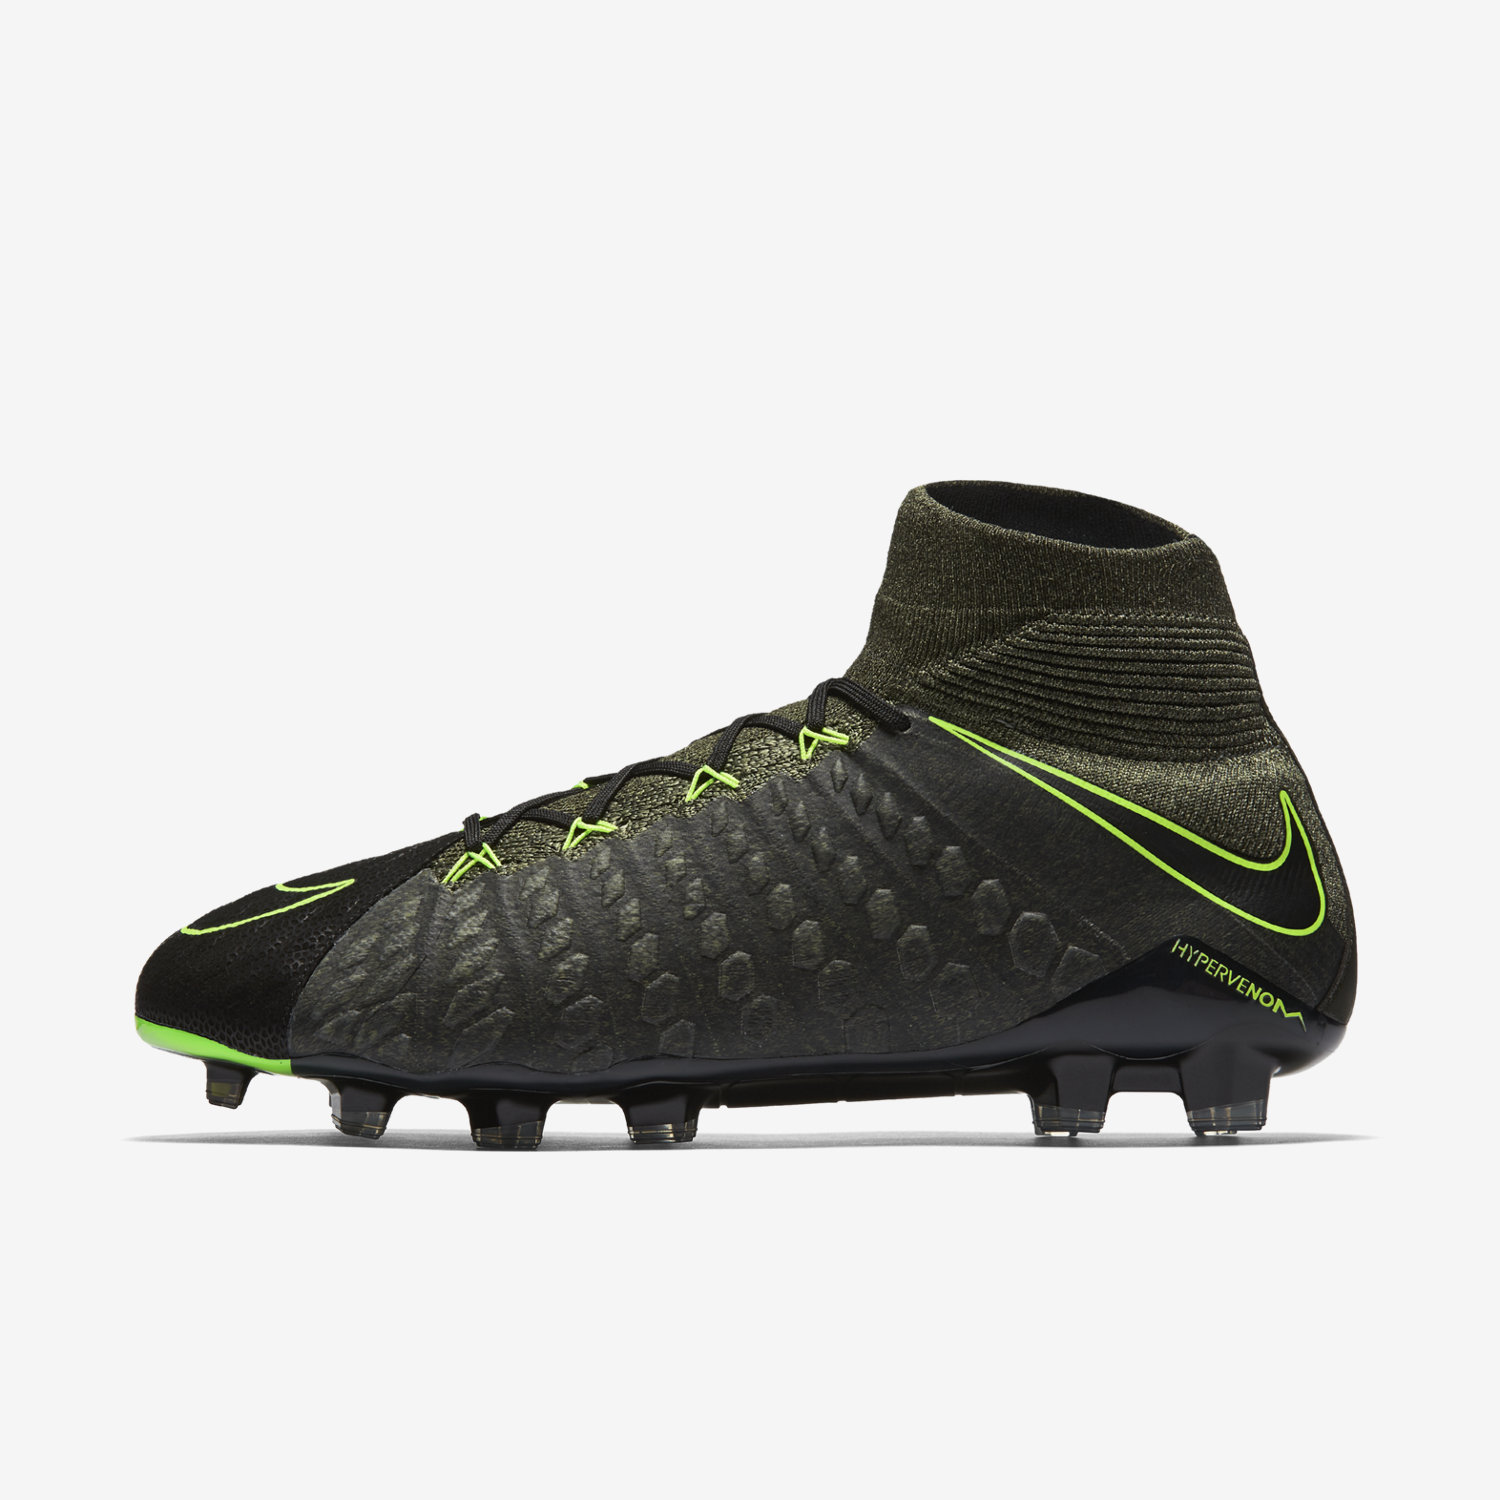 ποδοσφαιρικα παπουτσια ανδρικα Nike Hypervenom Phantom 3 DF Tech Craft FG μαυρα/πρασινο/πρασινο 2448